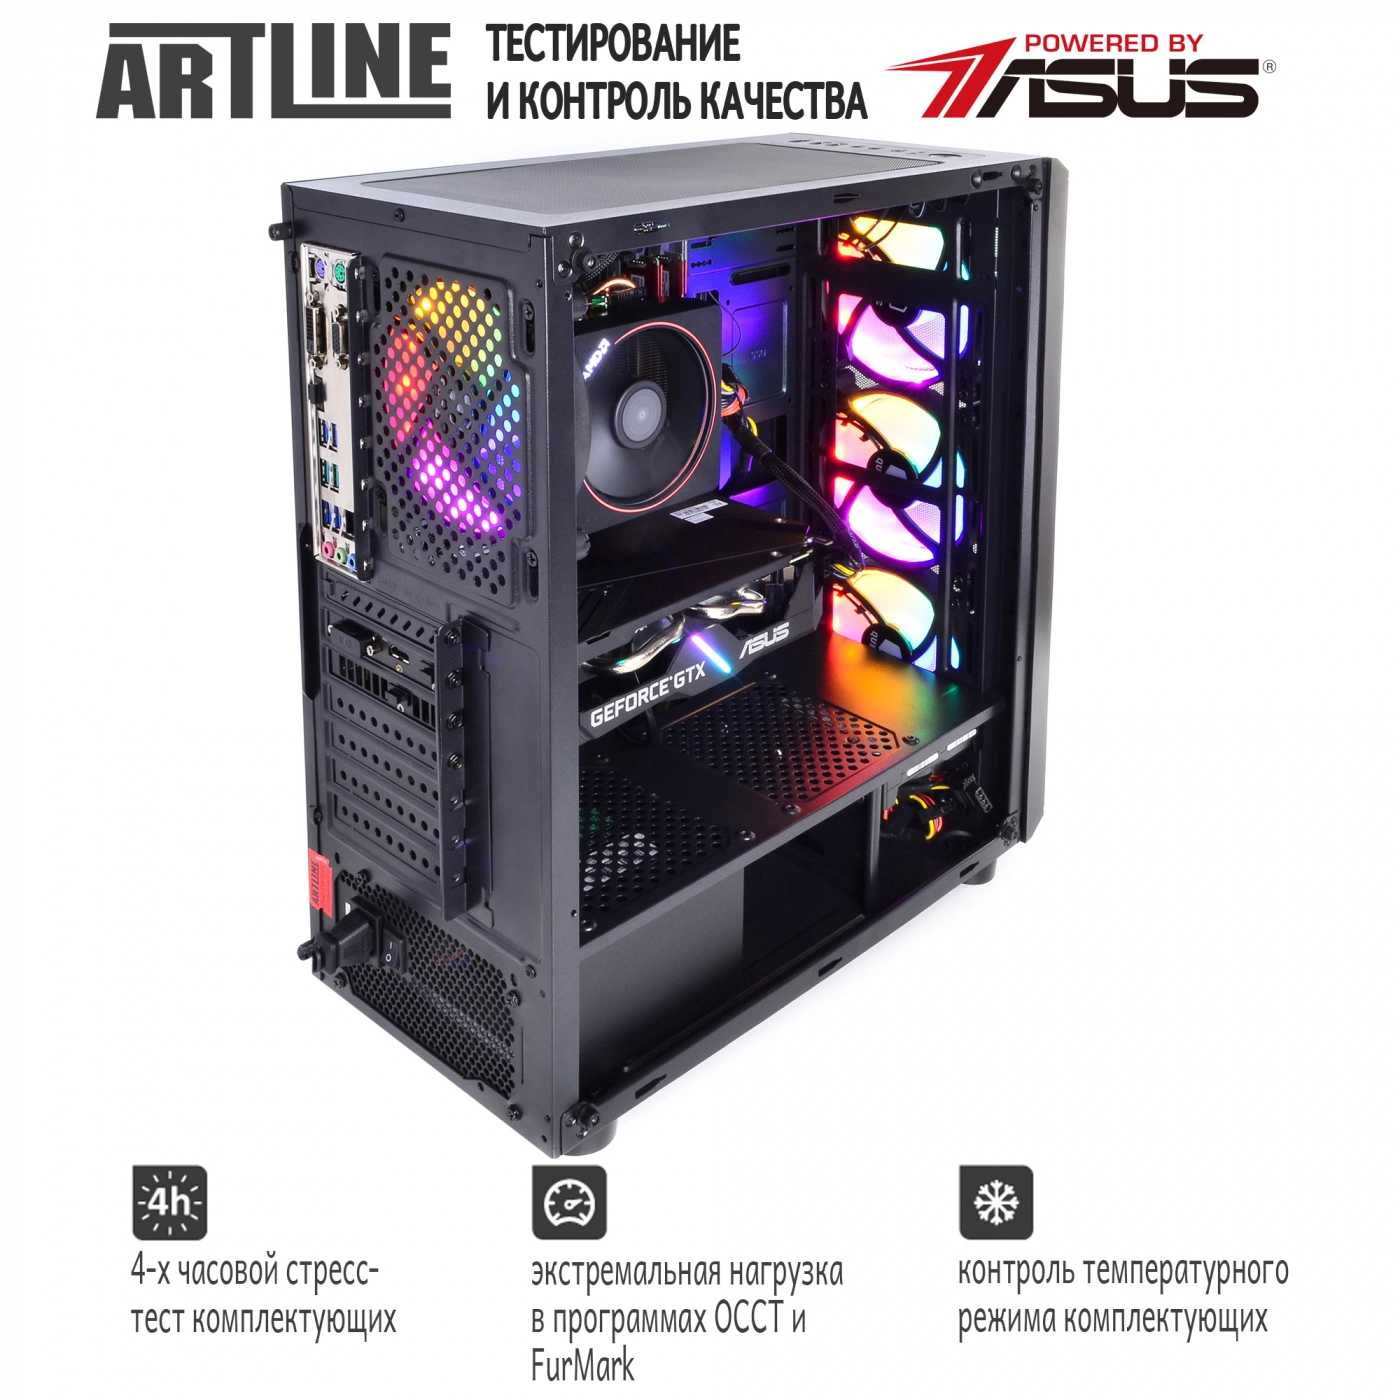 Купить Компьютер ARTLINE Gaming X46v17 - фото 9